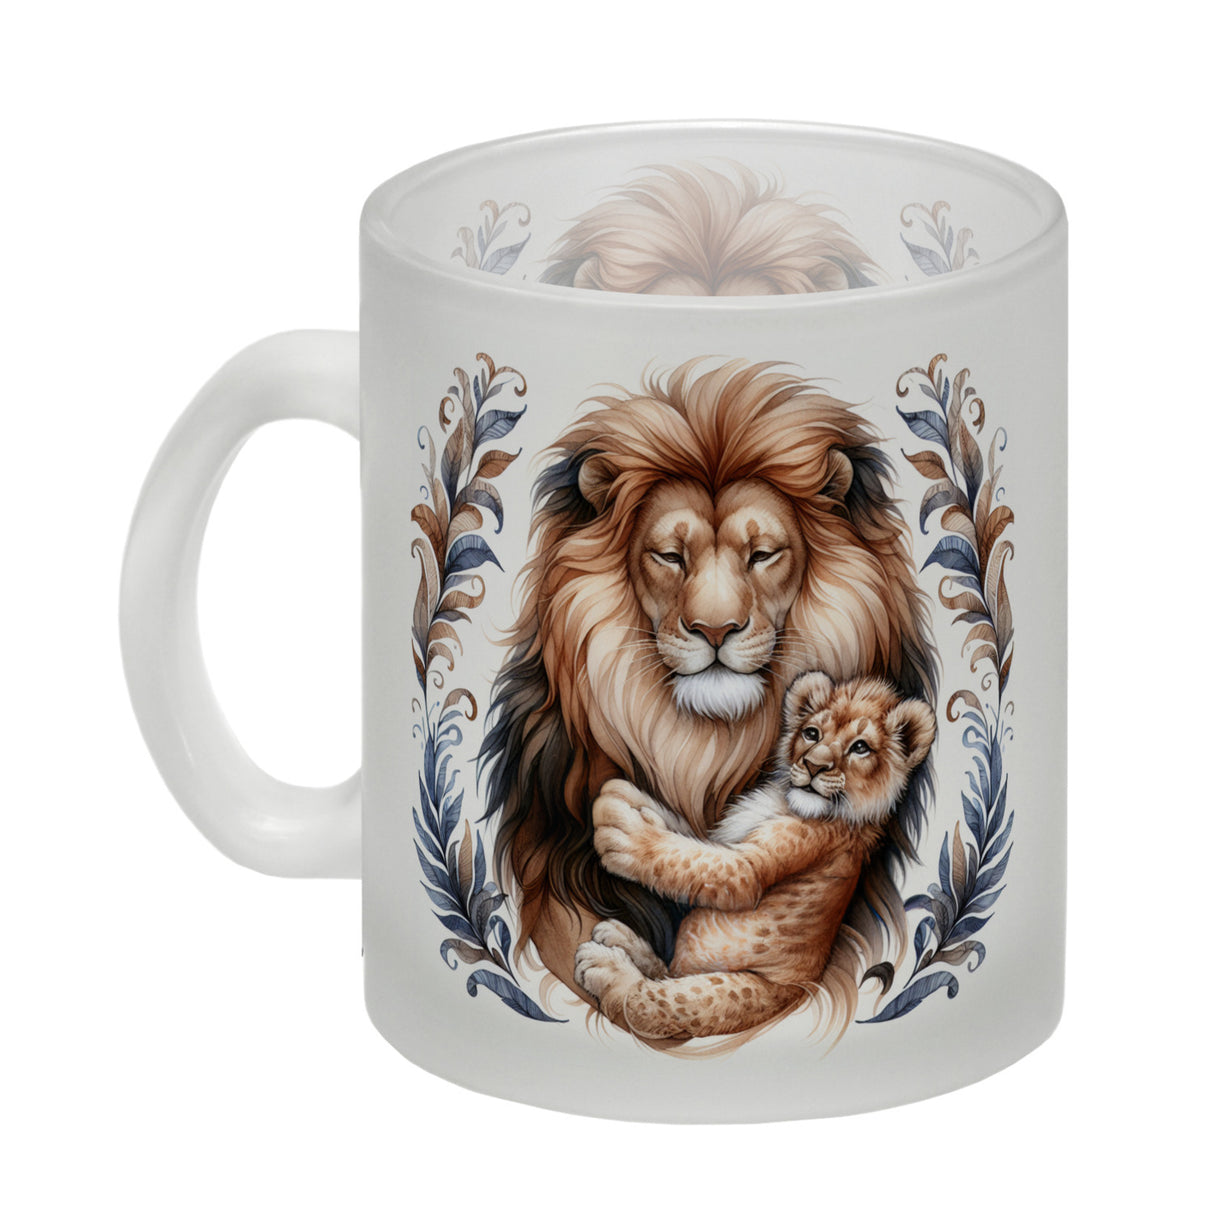 Löwenpapa mit Baby Kaffeebecher